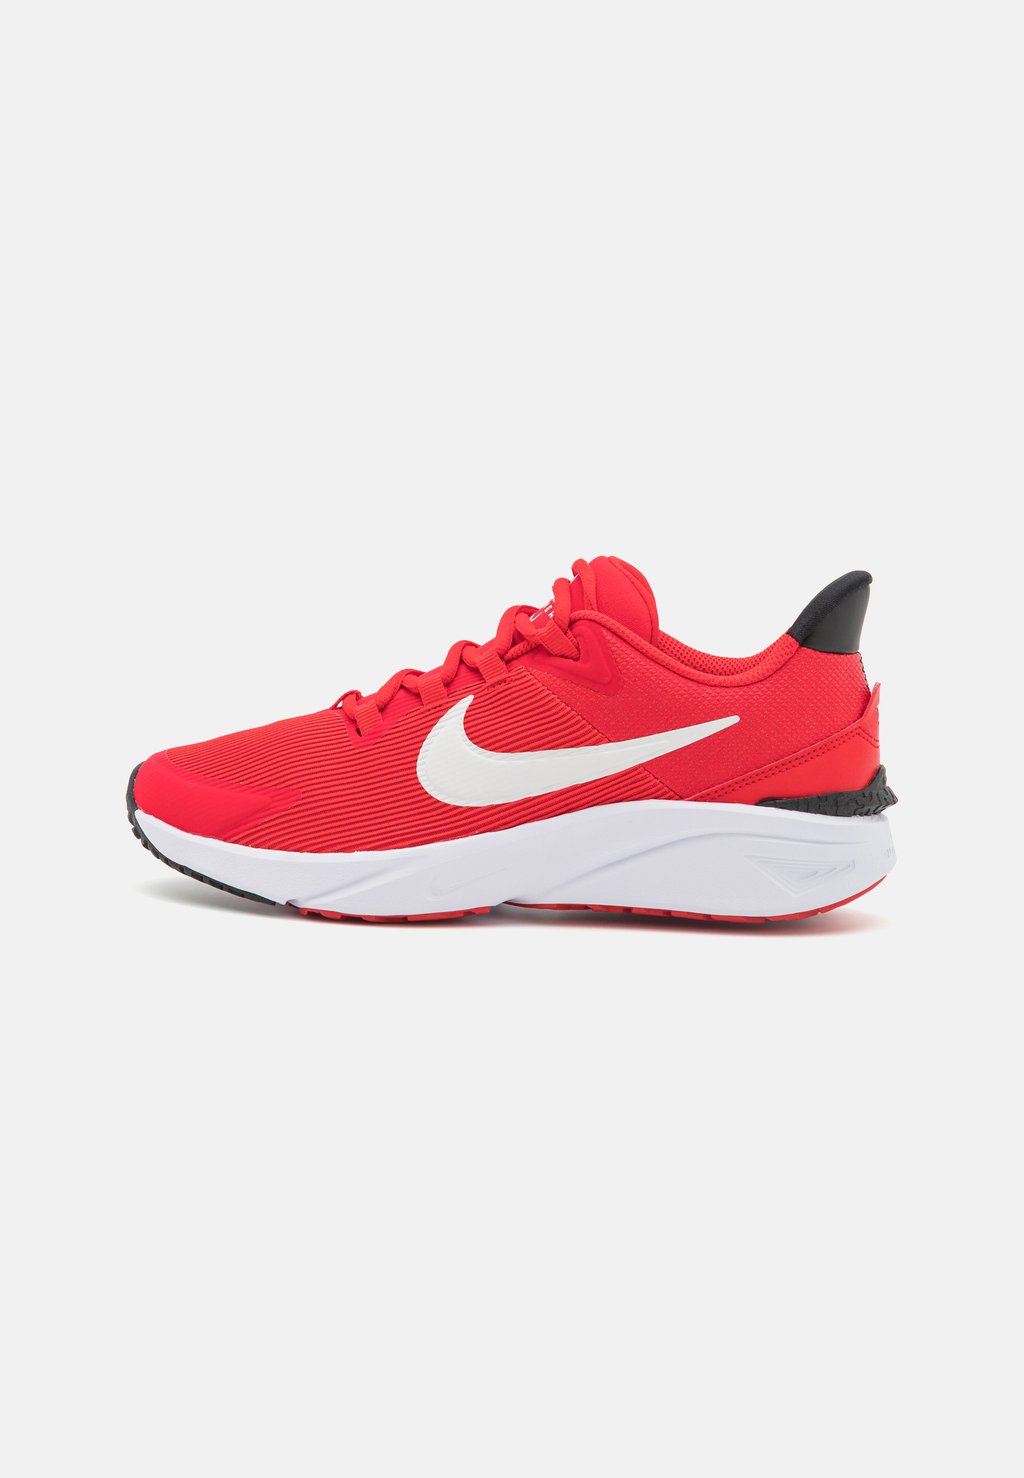 Нейтральные кроссовки Star Runner 4 Unisex Nike, цвет university red/summit white/black/white цена и фото